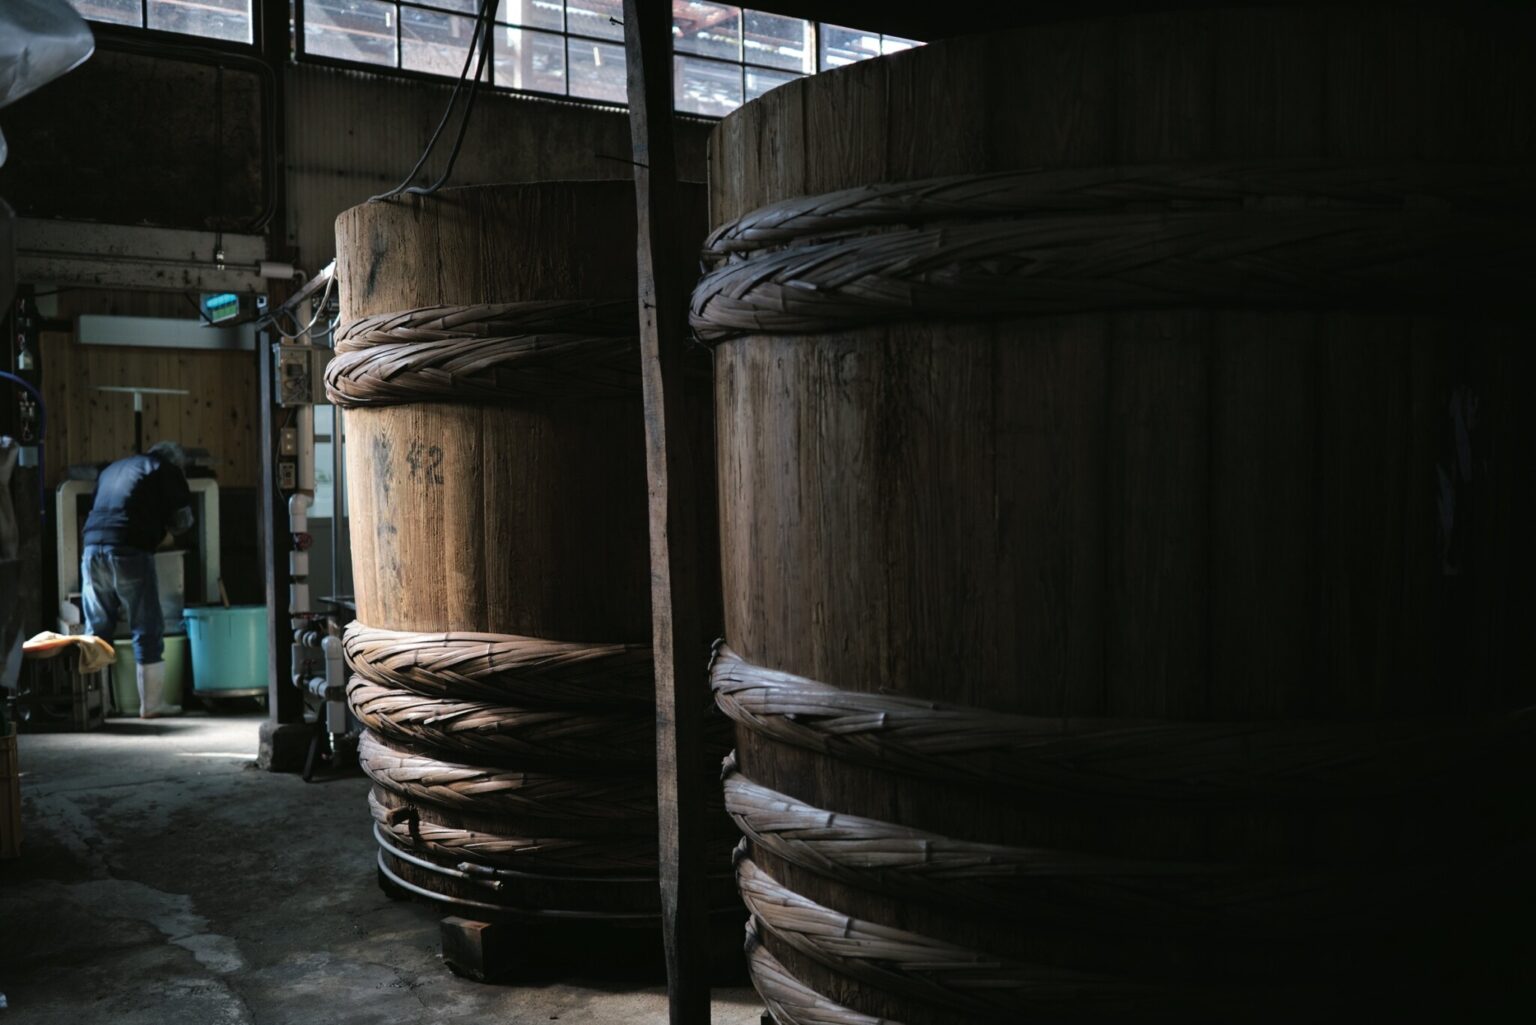 豊かな水源に恵まれ、寒暖差のある岡山・真庭市。この地域では古くから発酵文化が根付いている。味噌、日本酒、ワインにチーズ…真庭の風土が宿る発酵は、究極のテロワール。岡山発酵の旅へ！